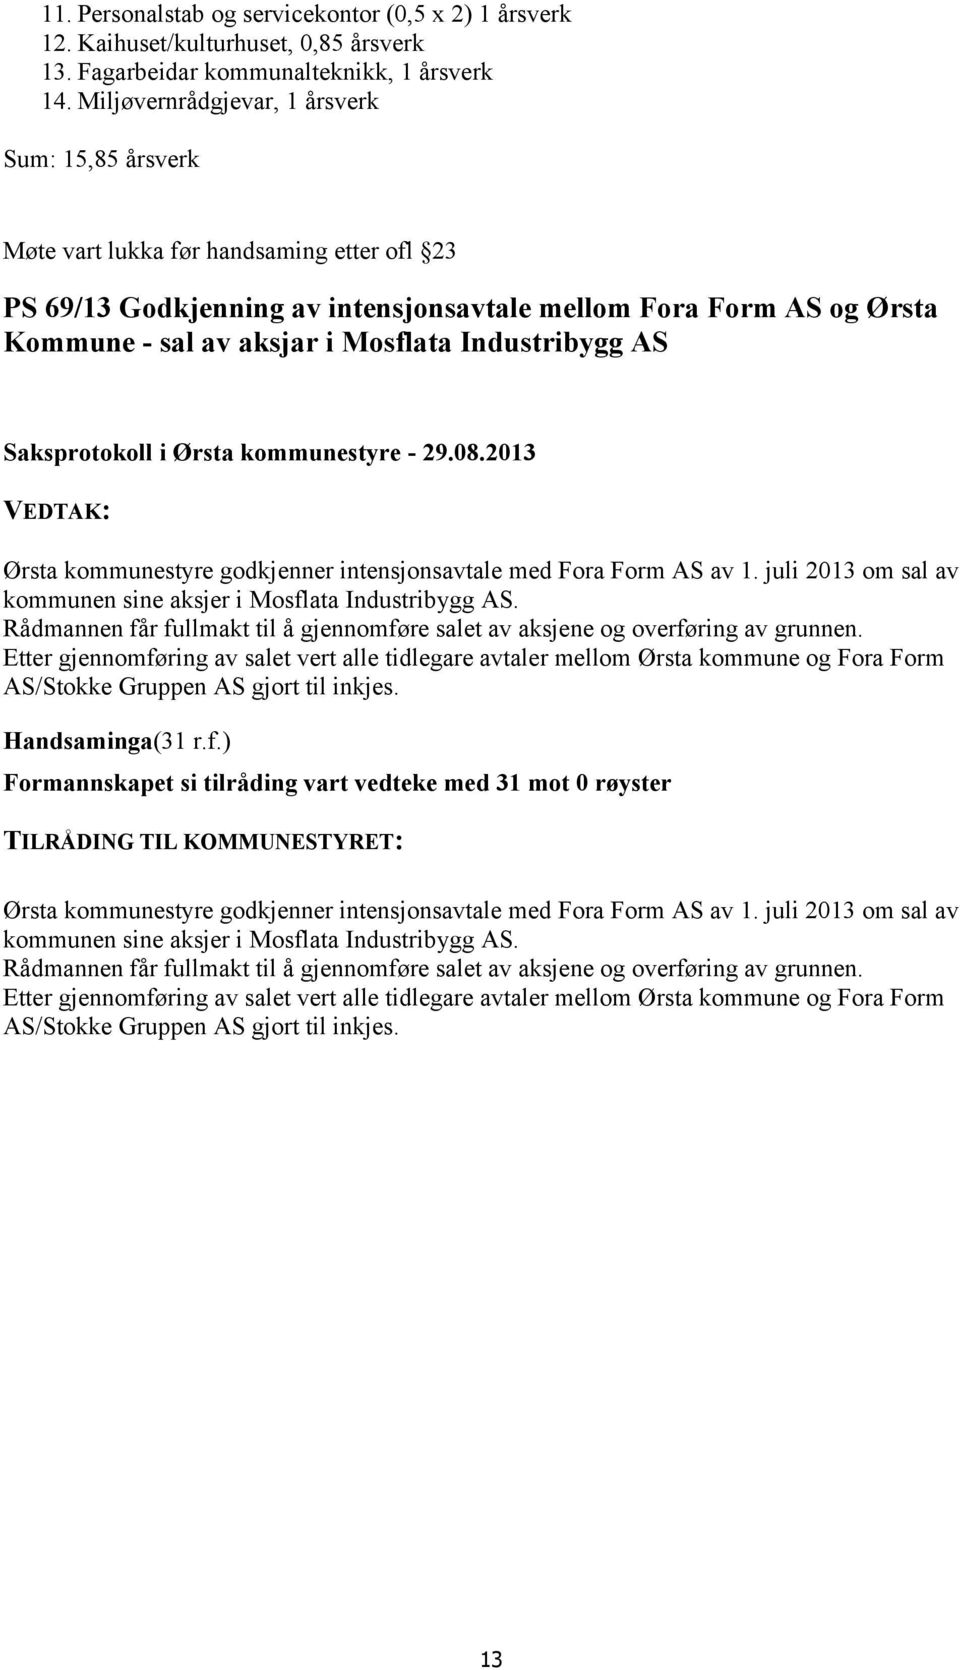 Industribygg AS Ørsta kommunestyre godkjenner intensjonsavtale med Fora Form AS av 1. juli 2013 om sal av kommunen sine aksjer i Mosflata Industribygg AS.